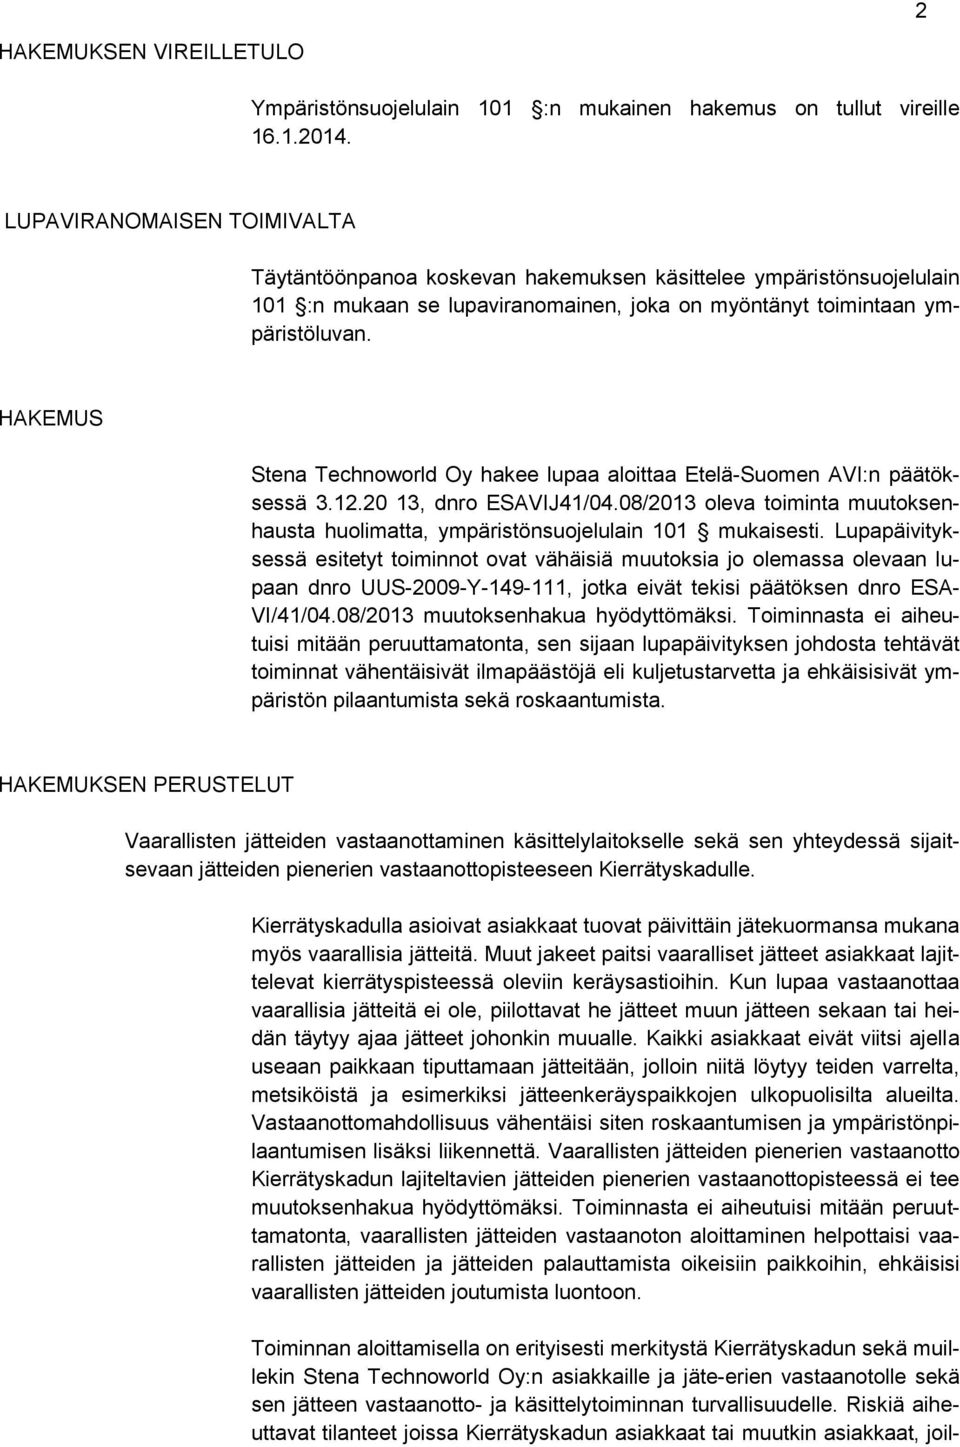 HAKEMUS Stena Technoworld Oy hakee lupaa aloittaa Etelä-Suomen AVI:n päätöksessä 3.12.20 13, dnro ESAVIJ41/04.08/2013 oleva toiminta muutoksenhausta huolimatta, ympäristönsuojelulain 101 mukaisesti.